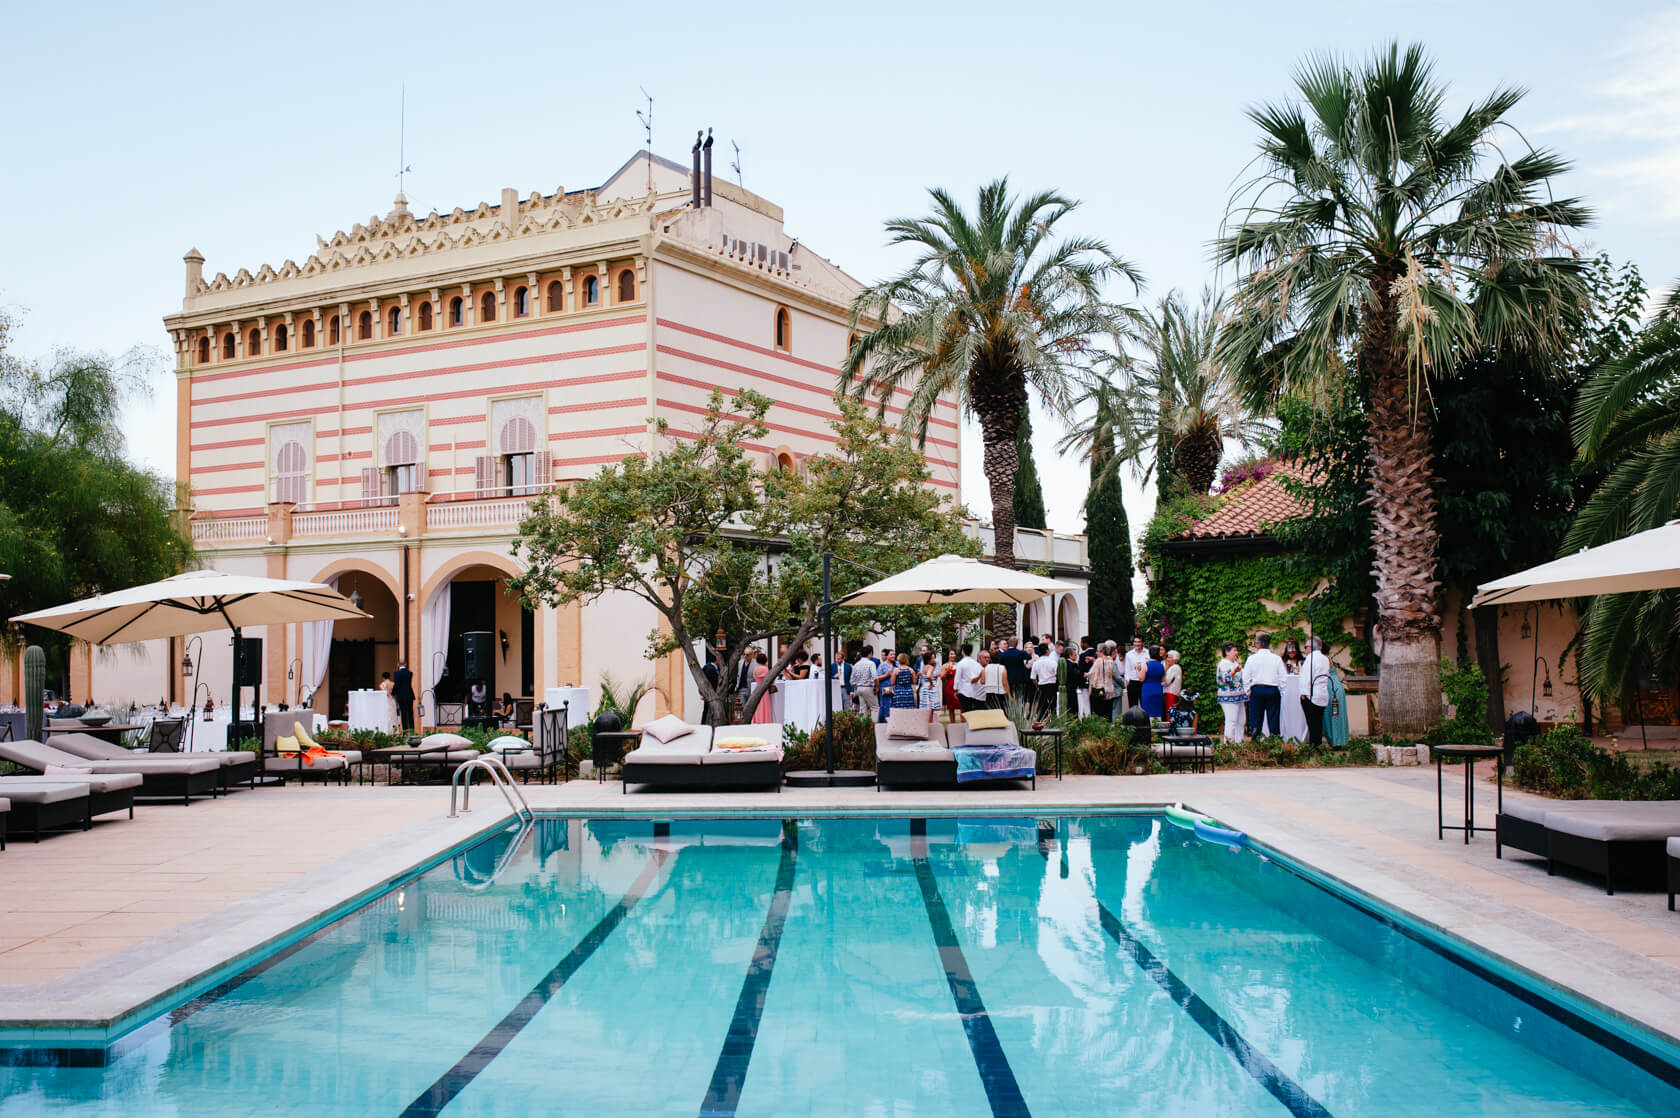 Gran Villa Rosa wedding venue in Spain